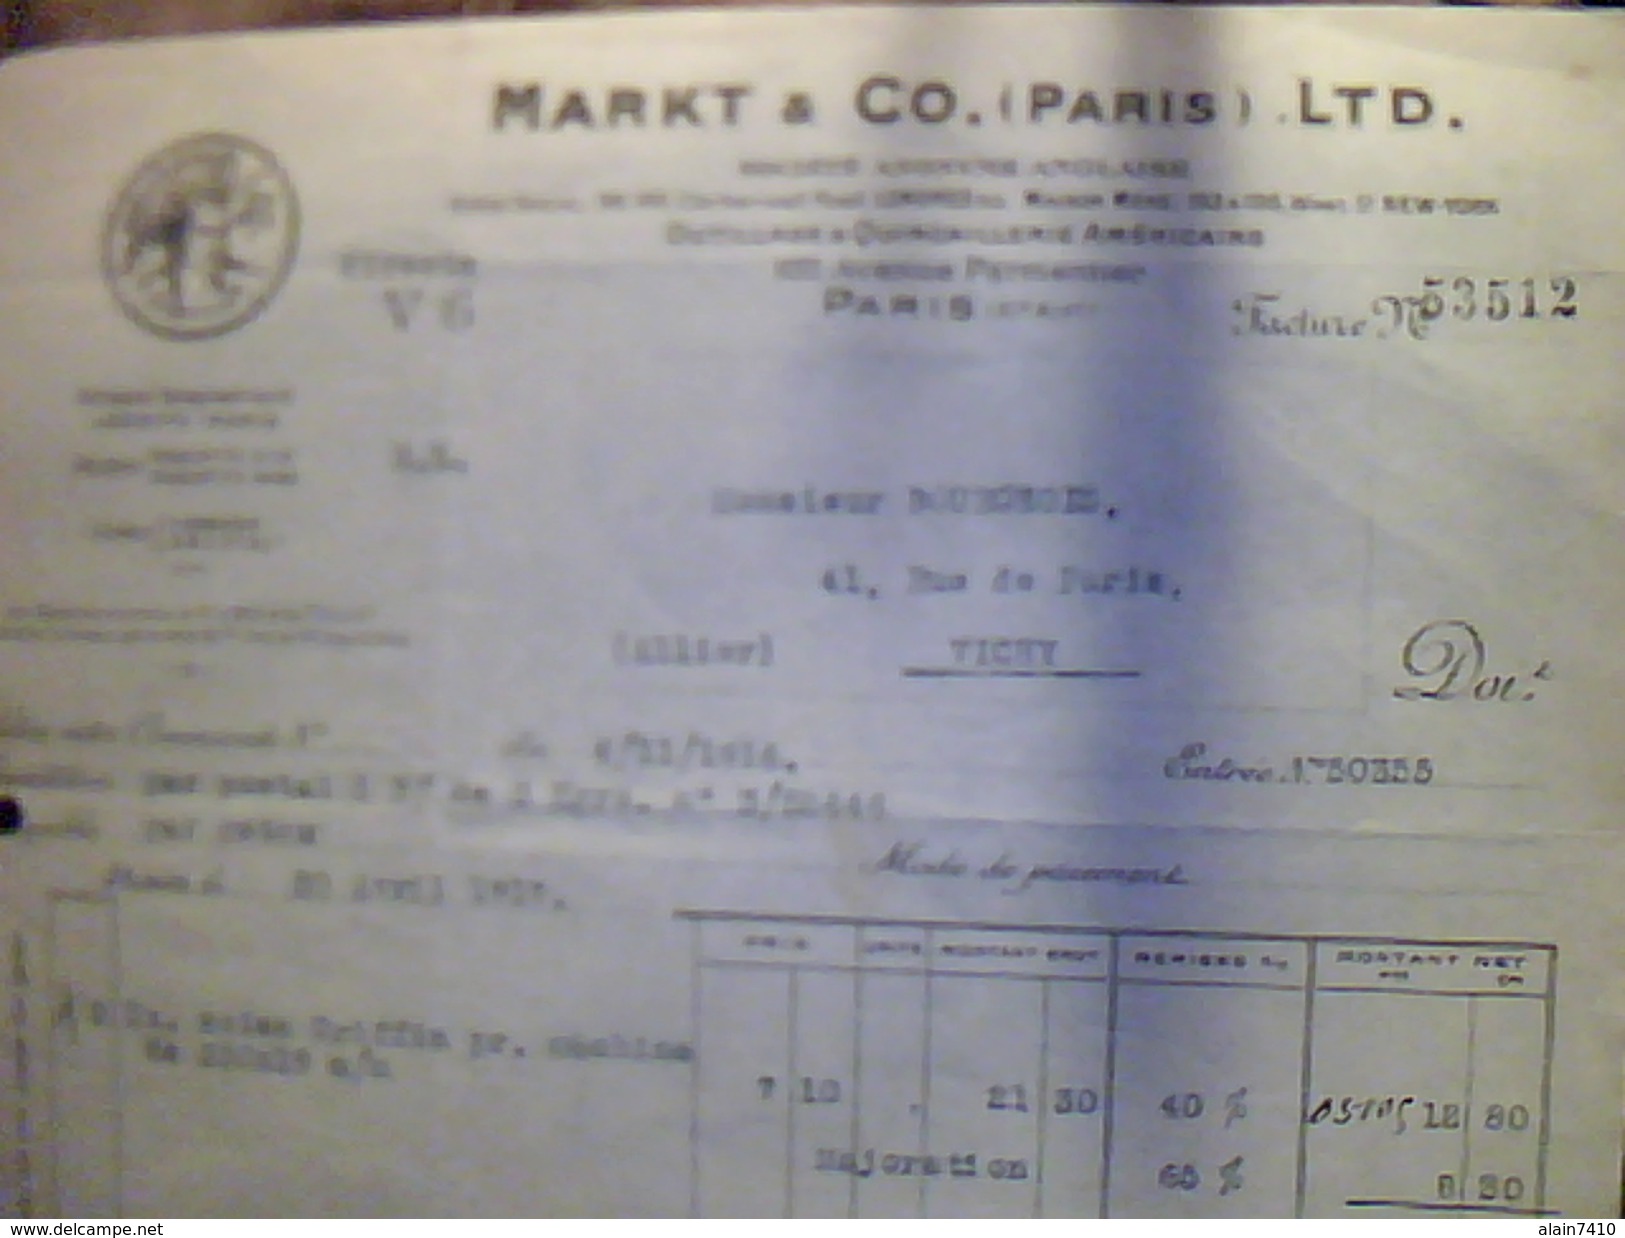 Vieux Papiers Facture Outillage Et Quincaillerie Americains Markt Et Co Paris Av Parmentier Annee 1966 - Stati Uniti